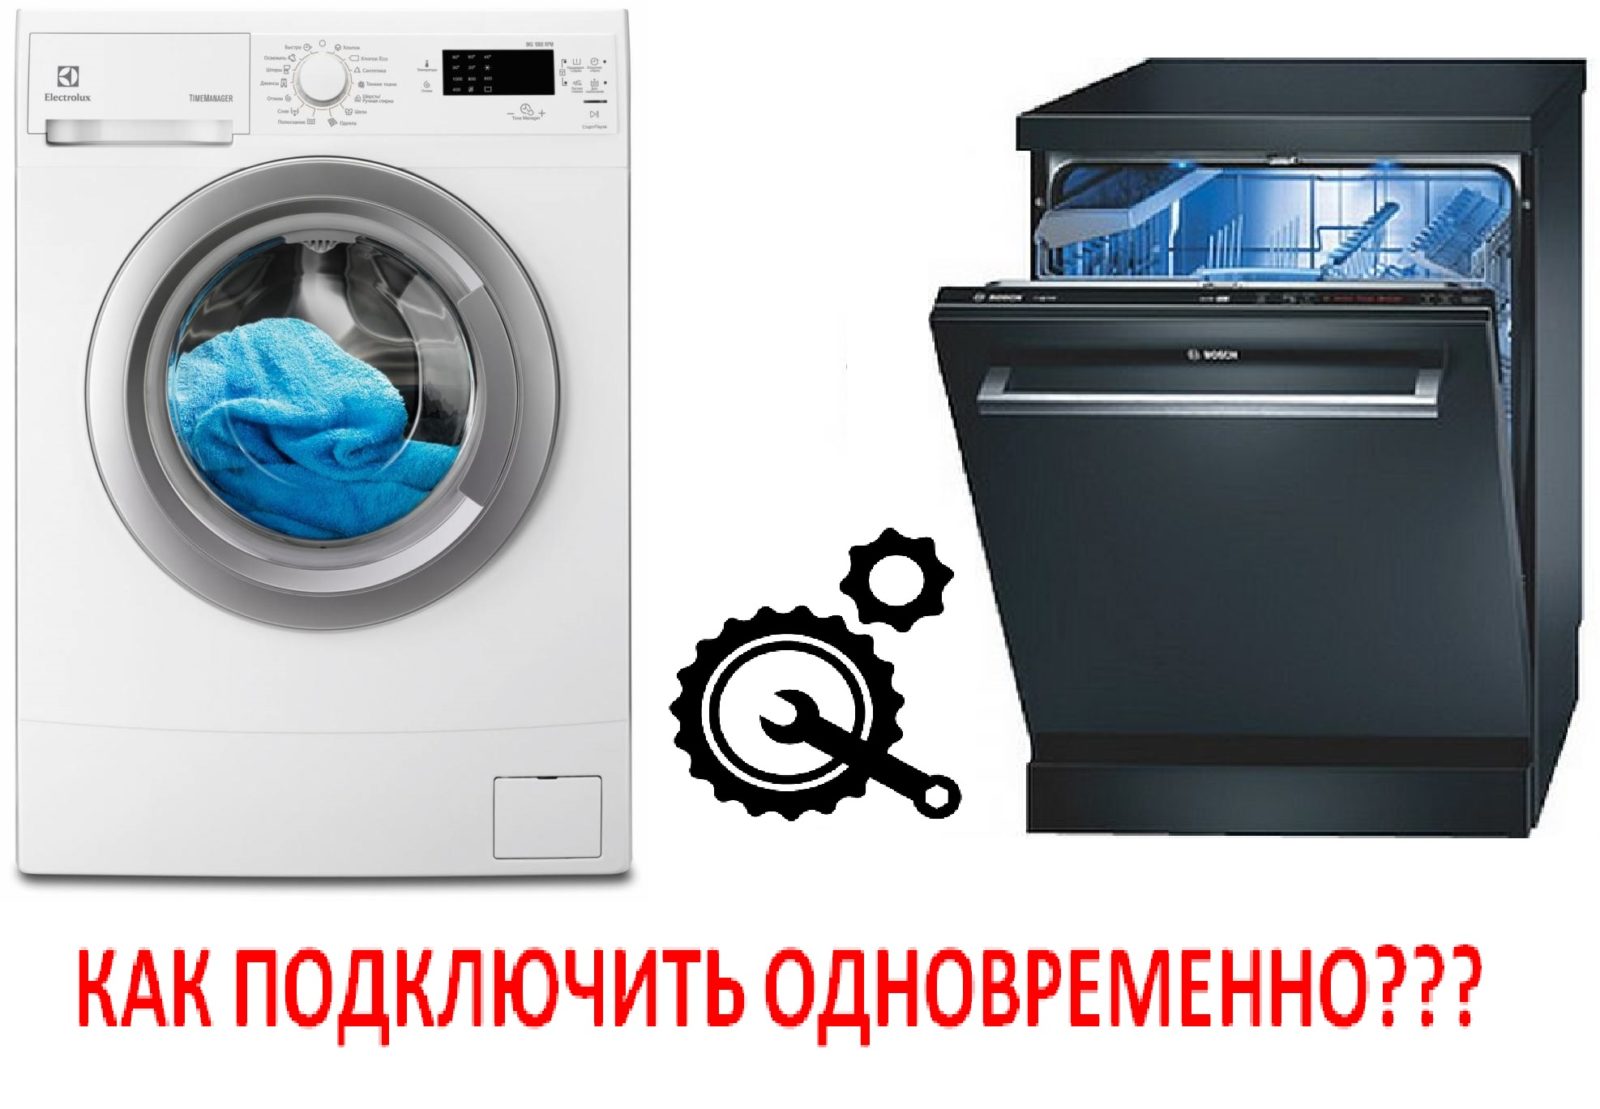 Come collegare una lavatrice e una lavastoviglie